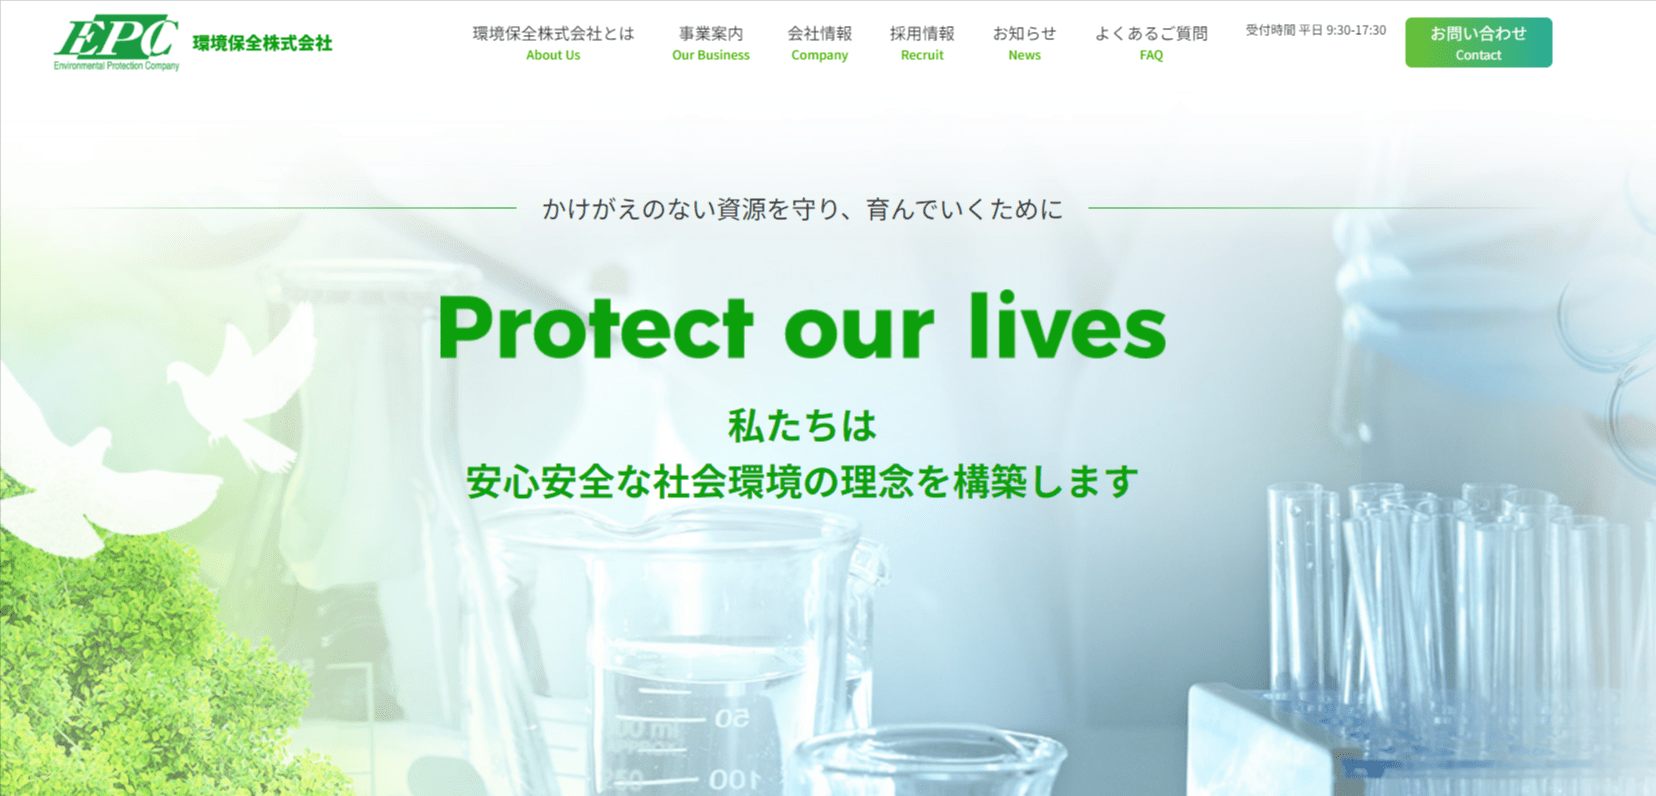 大阪環境保全株式会社